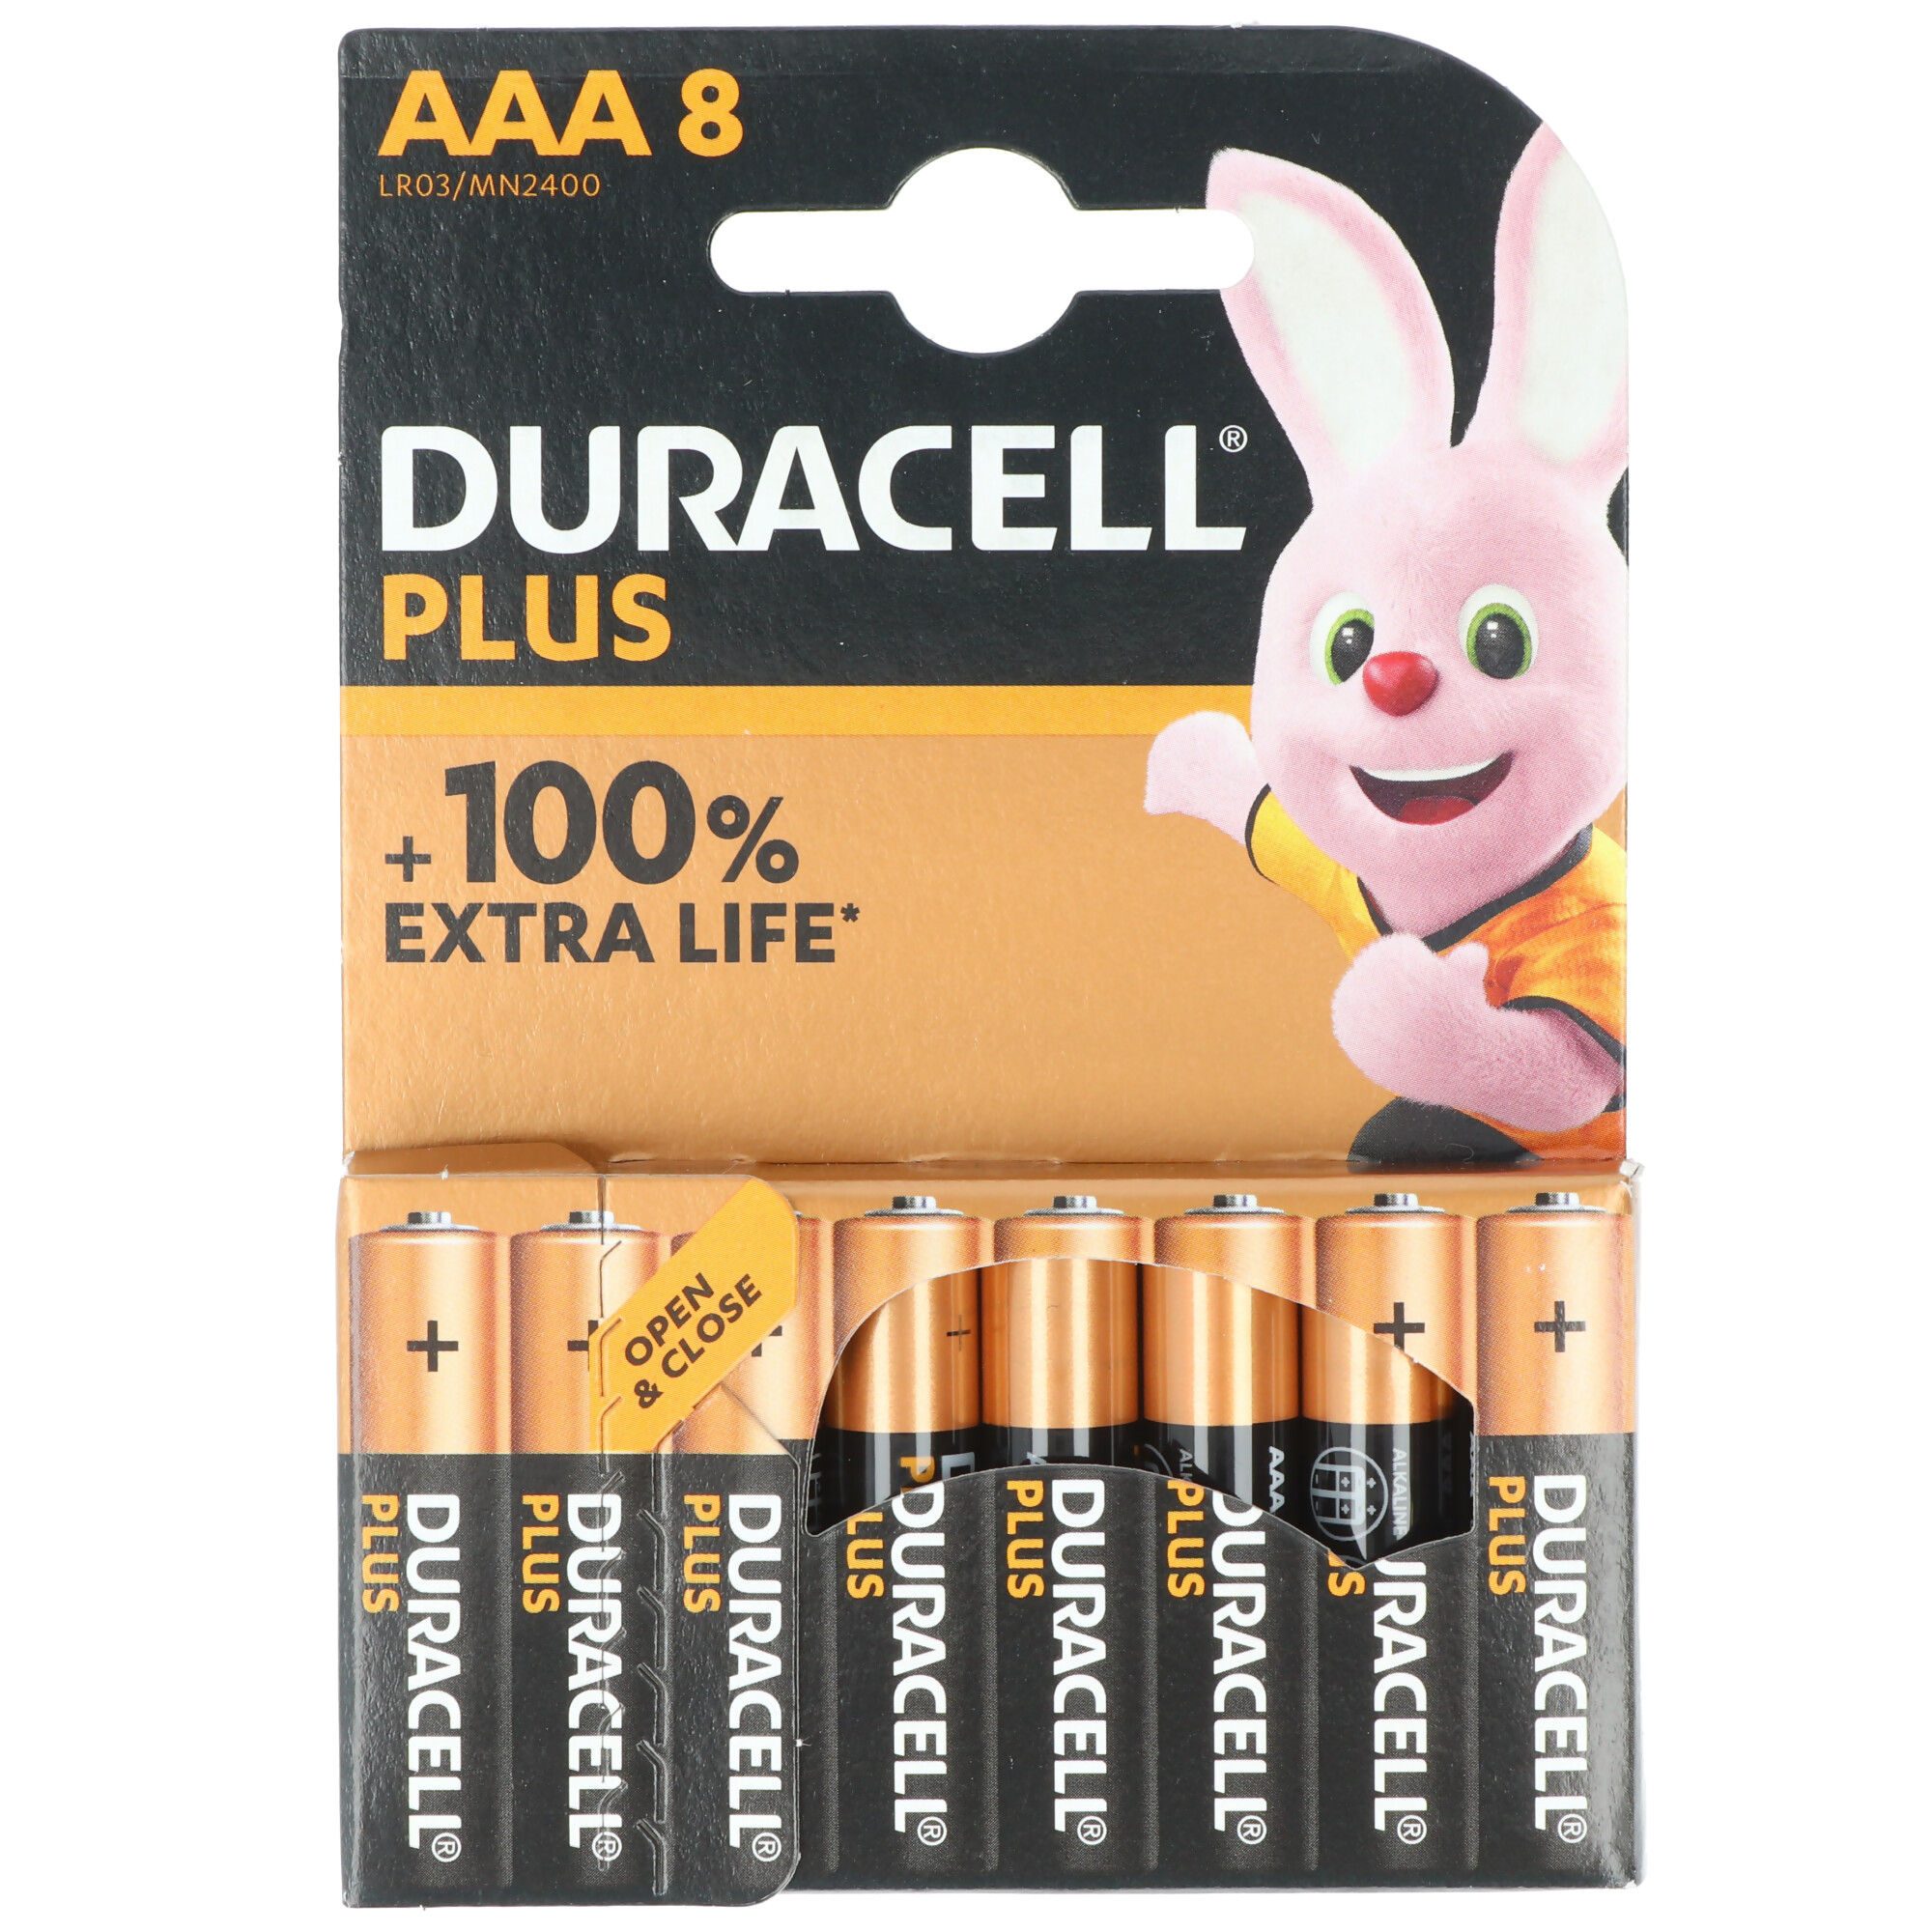 Duracell Piles Alcaline Plus Power 9V 6LR61 (à l'unité) - Pile et